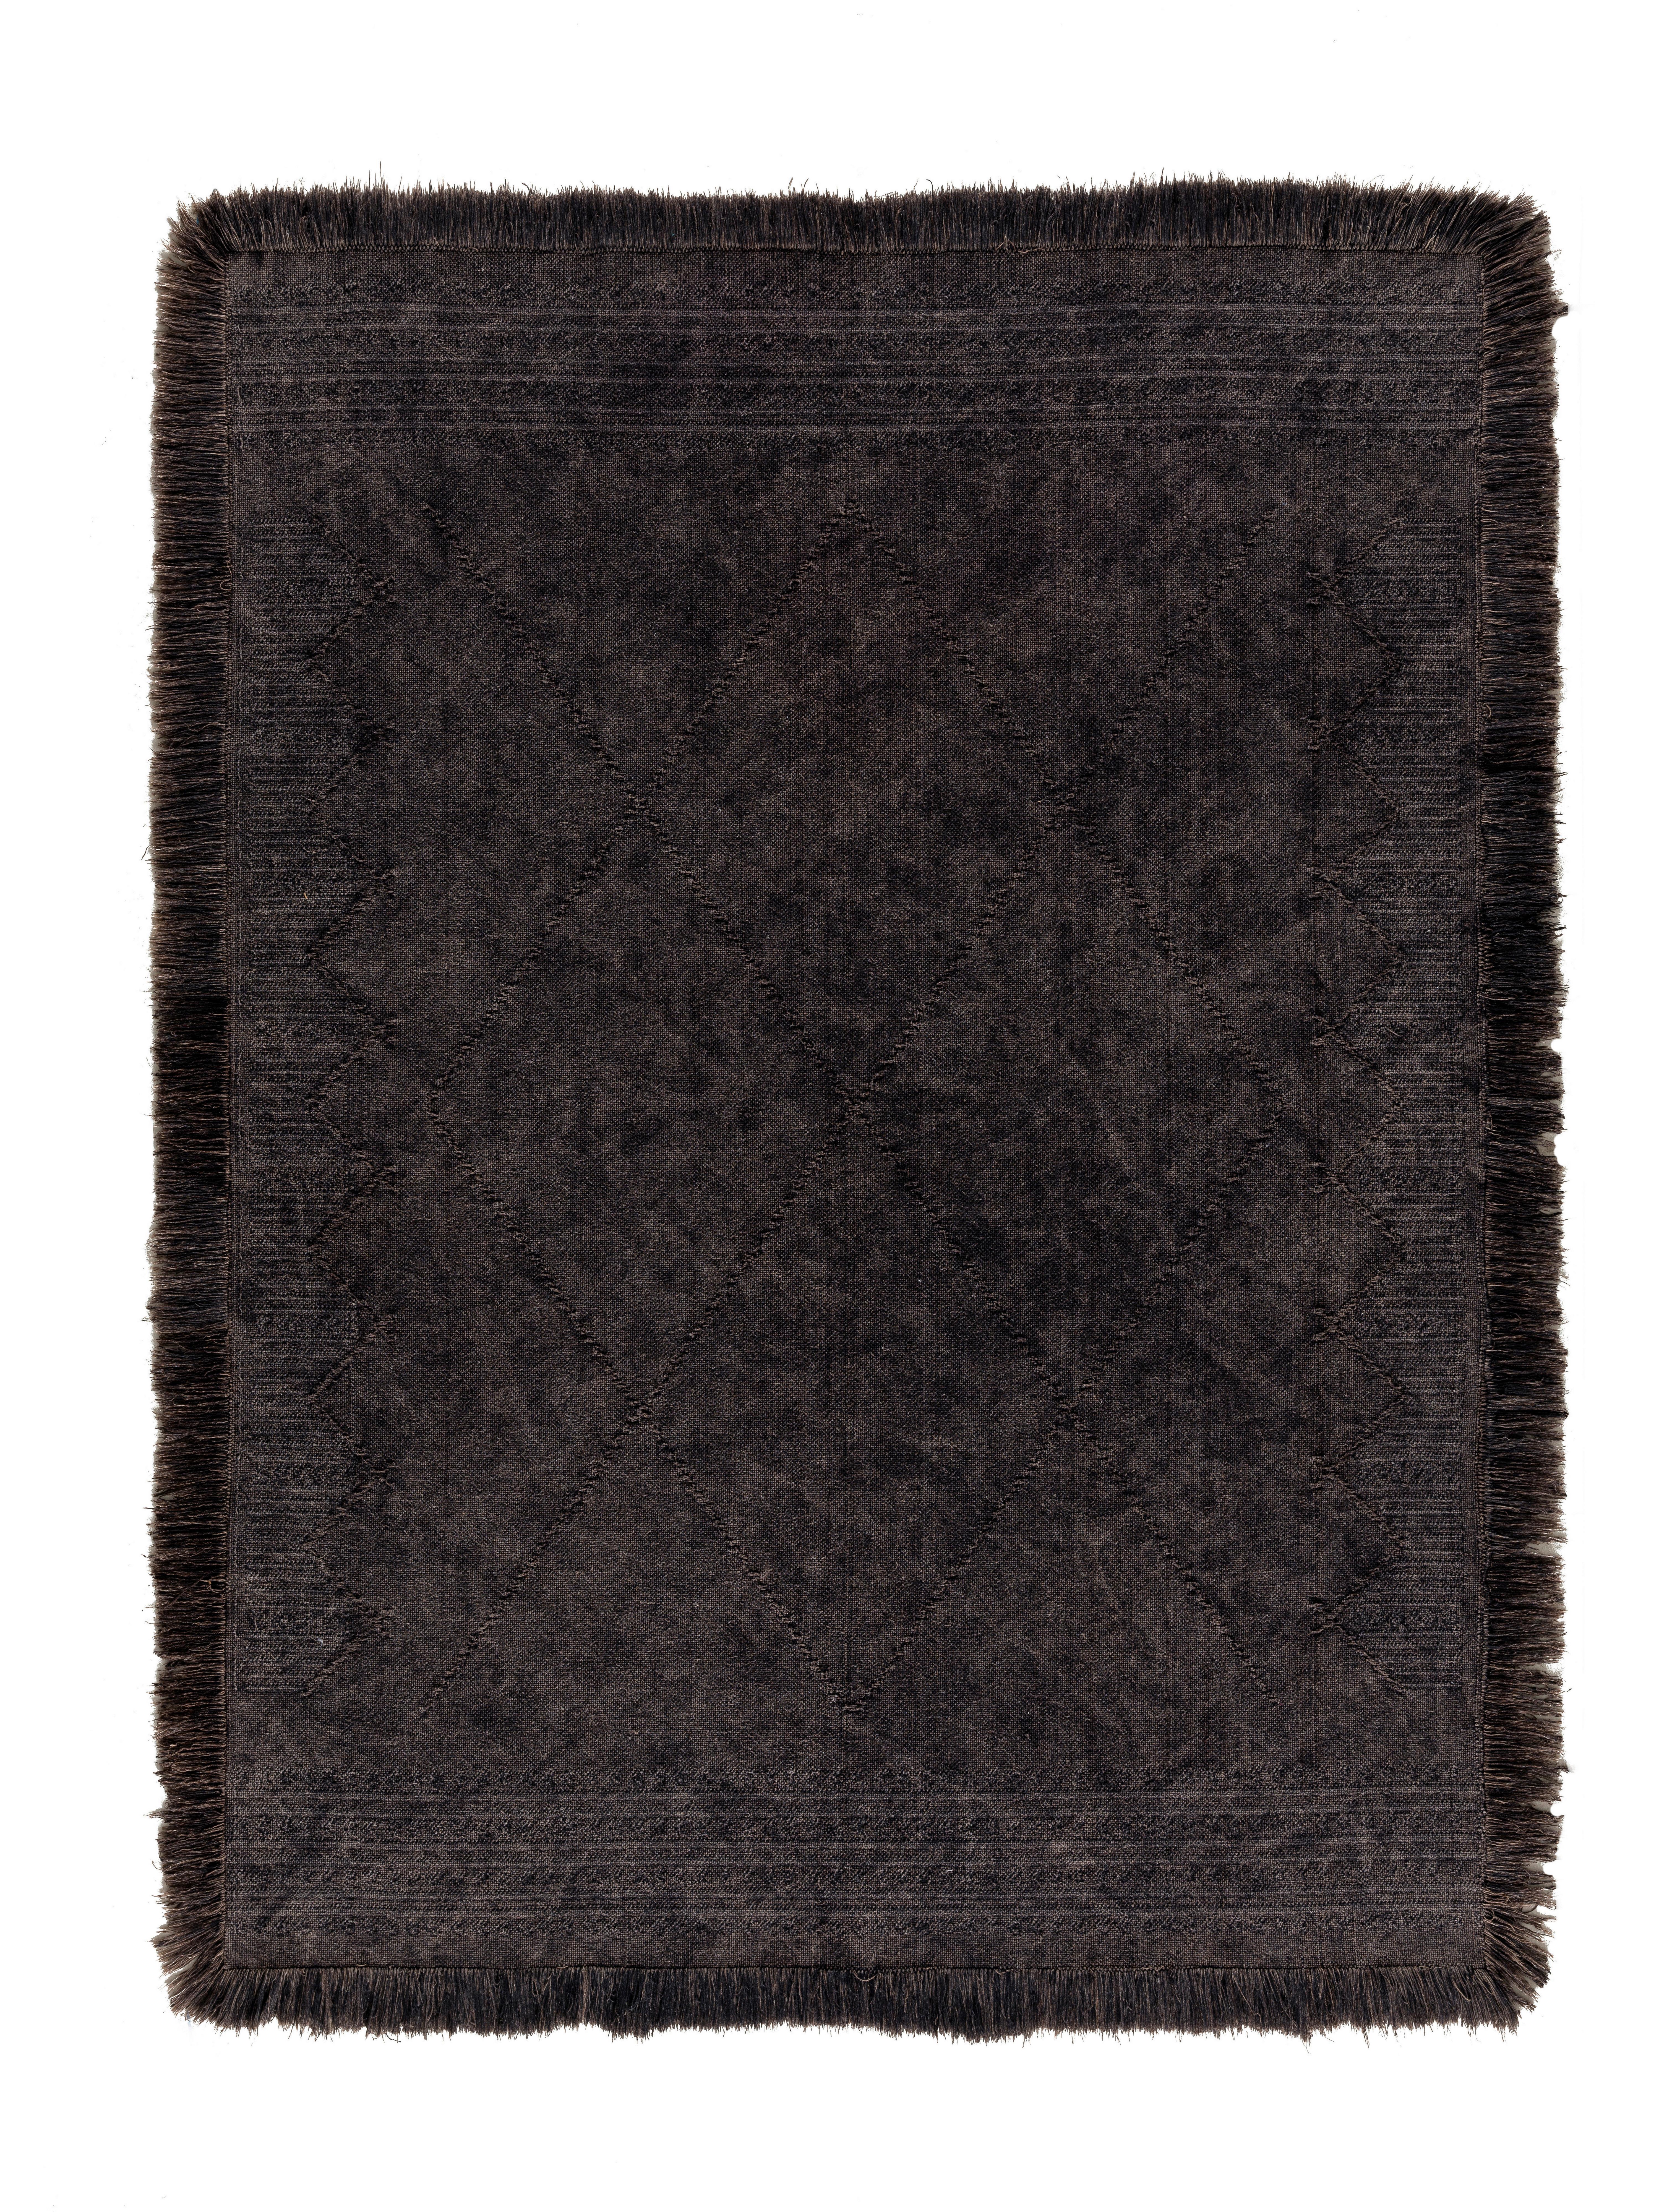 Ručně Tkaný Koberec Monaco 3, 160/230cm, Antracit - antracitová, textil (160/230cm) - Modern Living